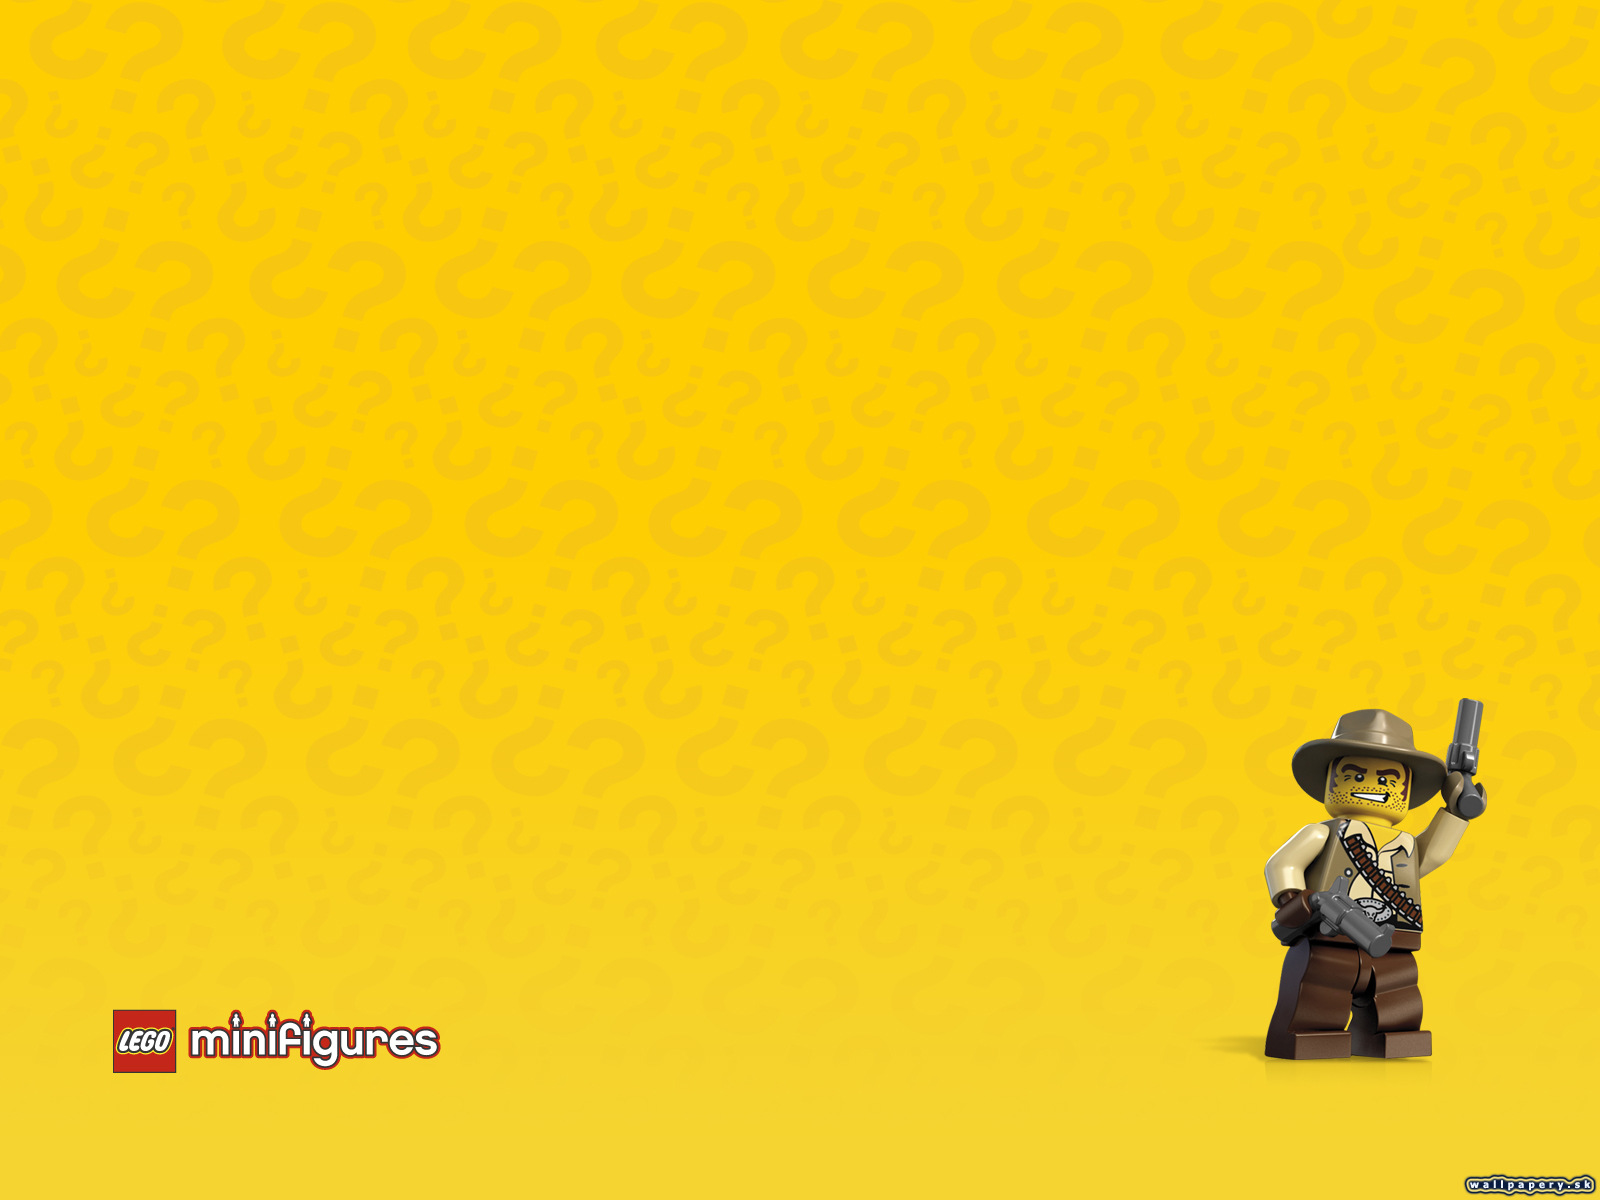 LEGO Minifigures Online - wallpaper 16